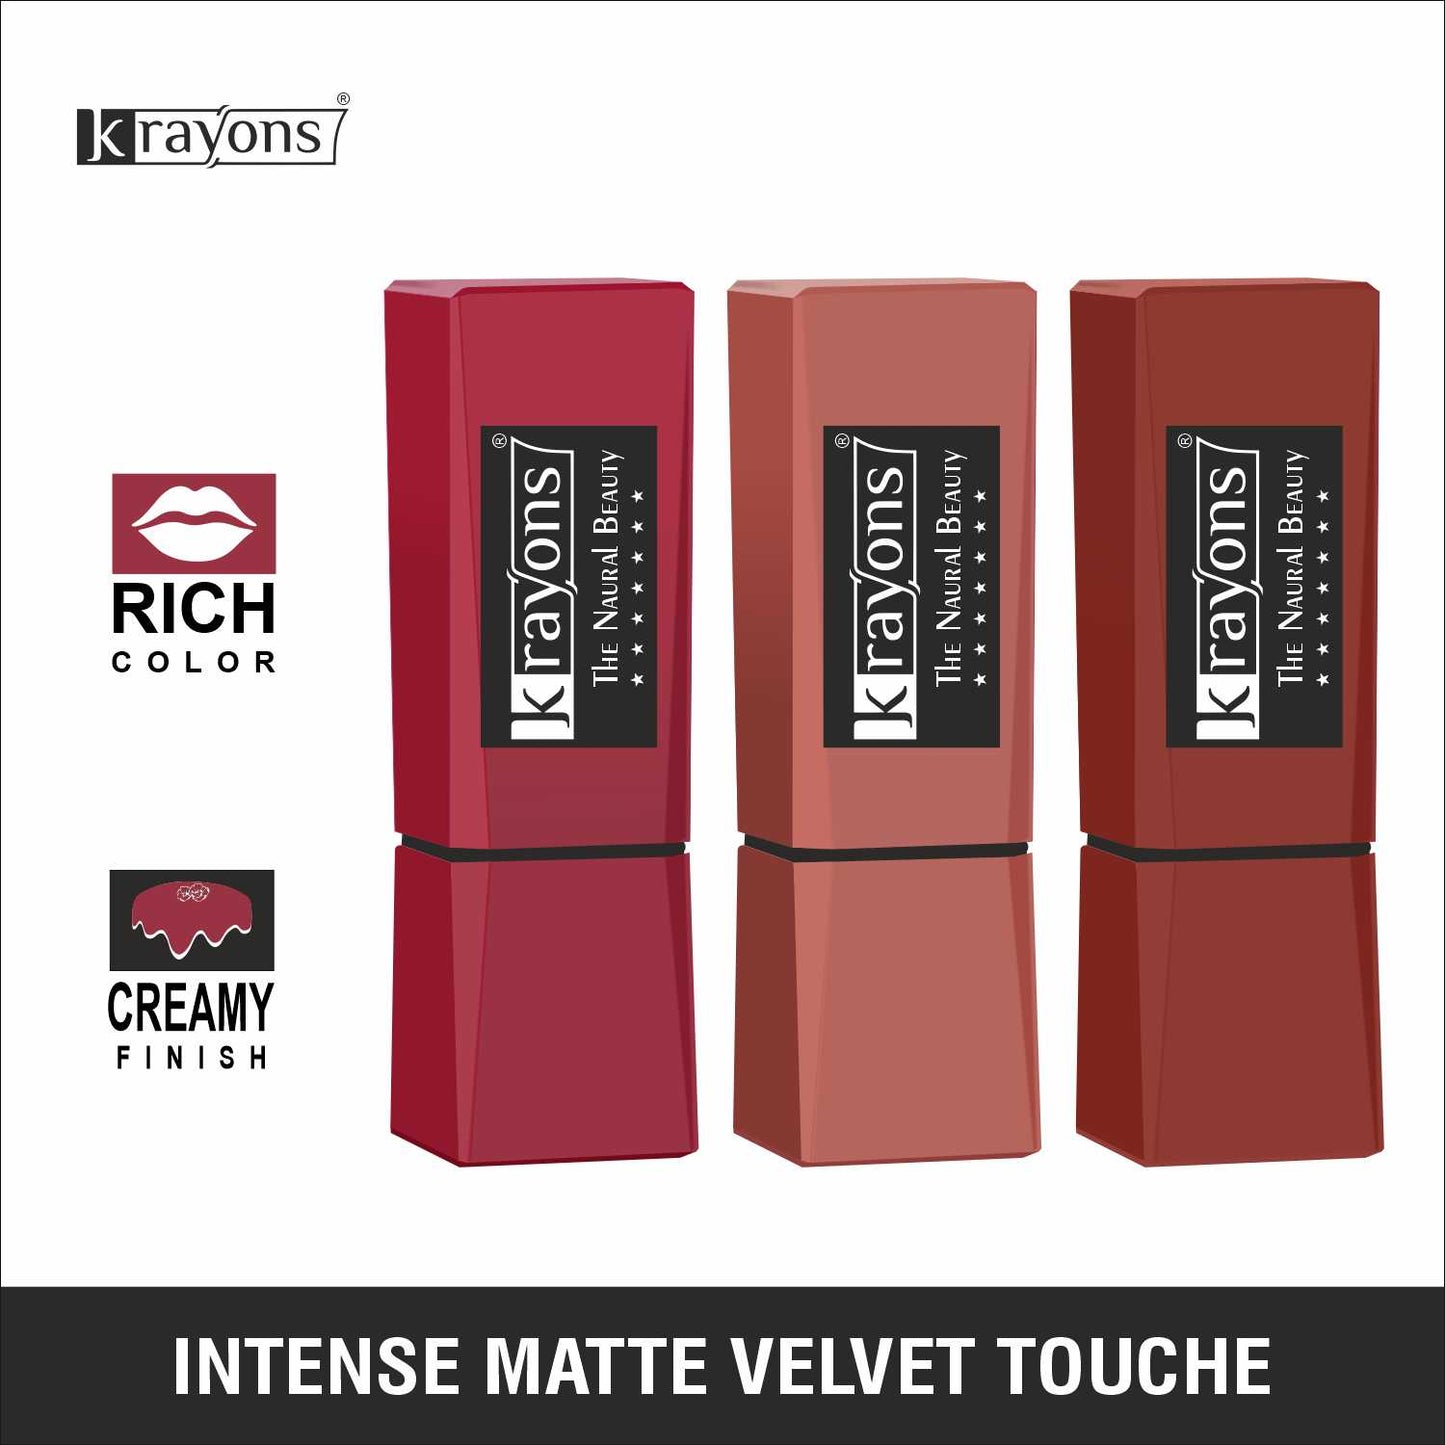 Krayons Intense Matte Lipstick, Waterproof, Longlasting, Scarlet Red, Nude Beige, Chocolate Caramel, 3.5gm Each (Pack of 3)